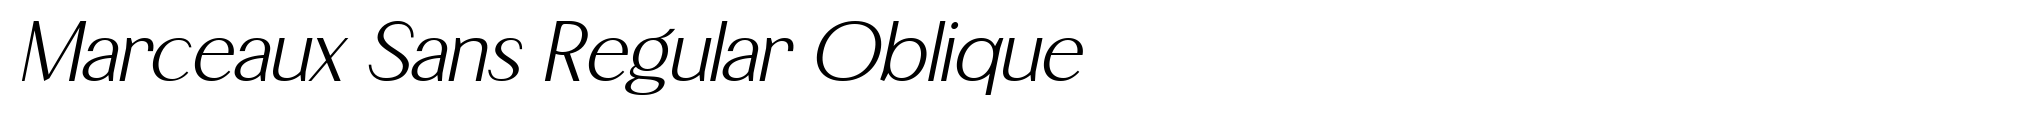 Marceaux Sans Regular Oblique image